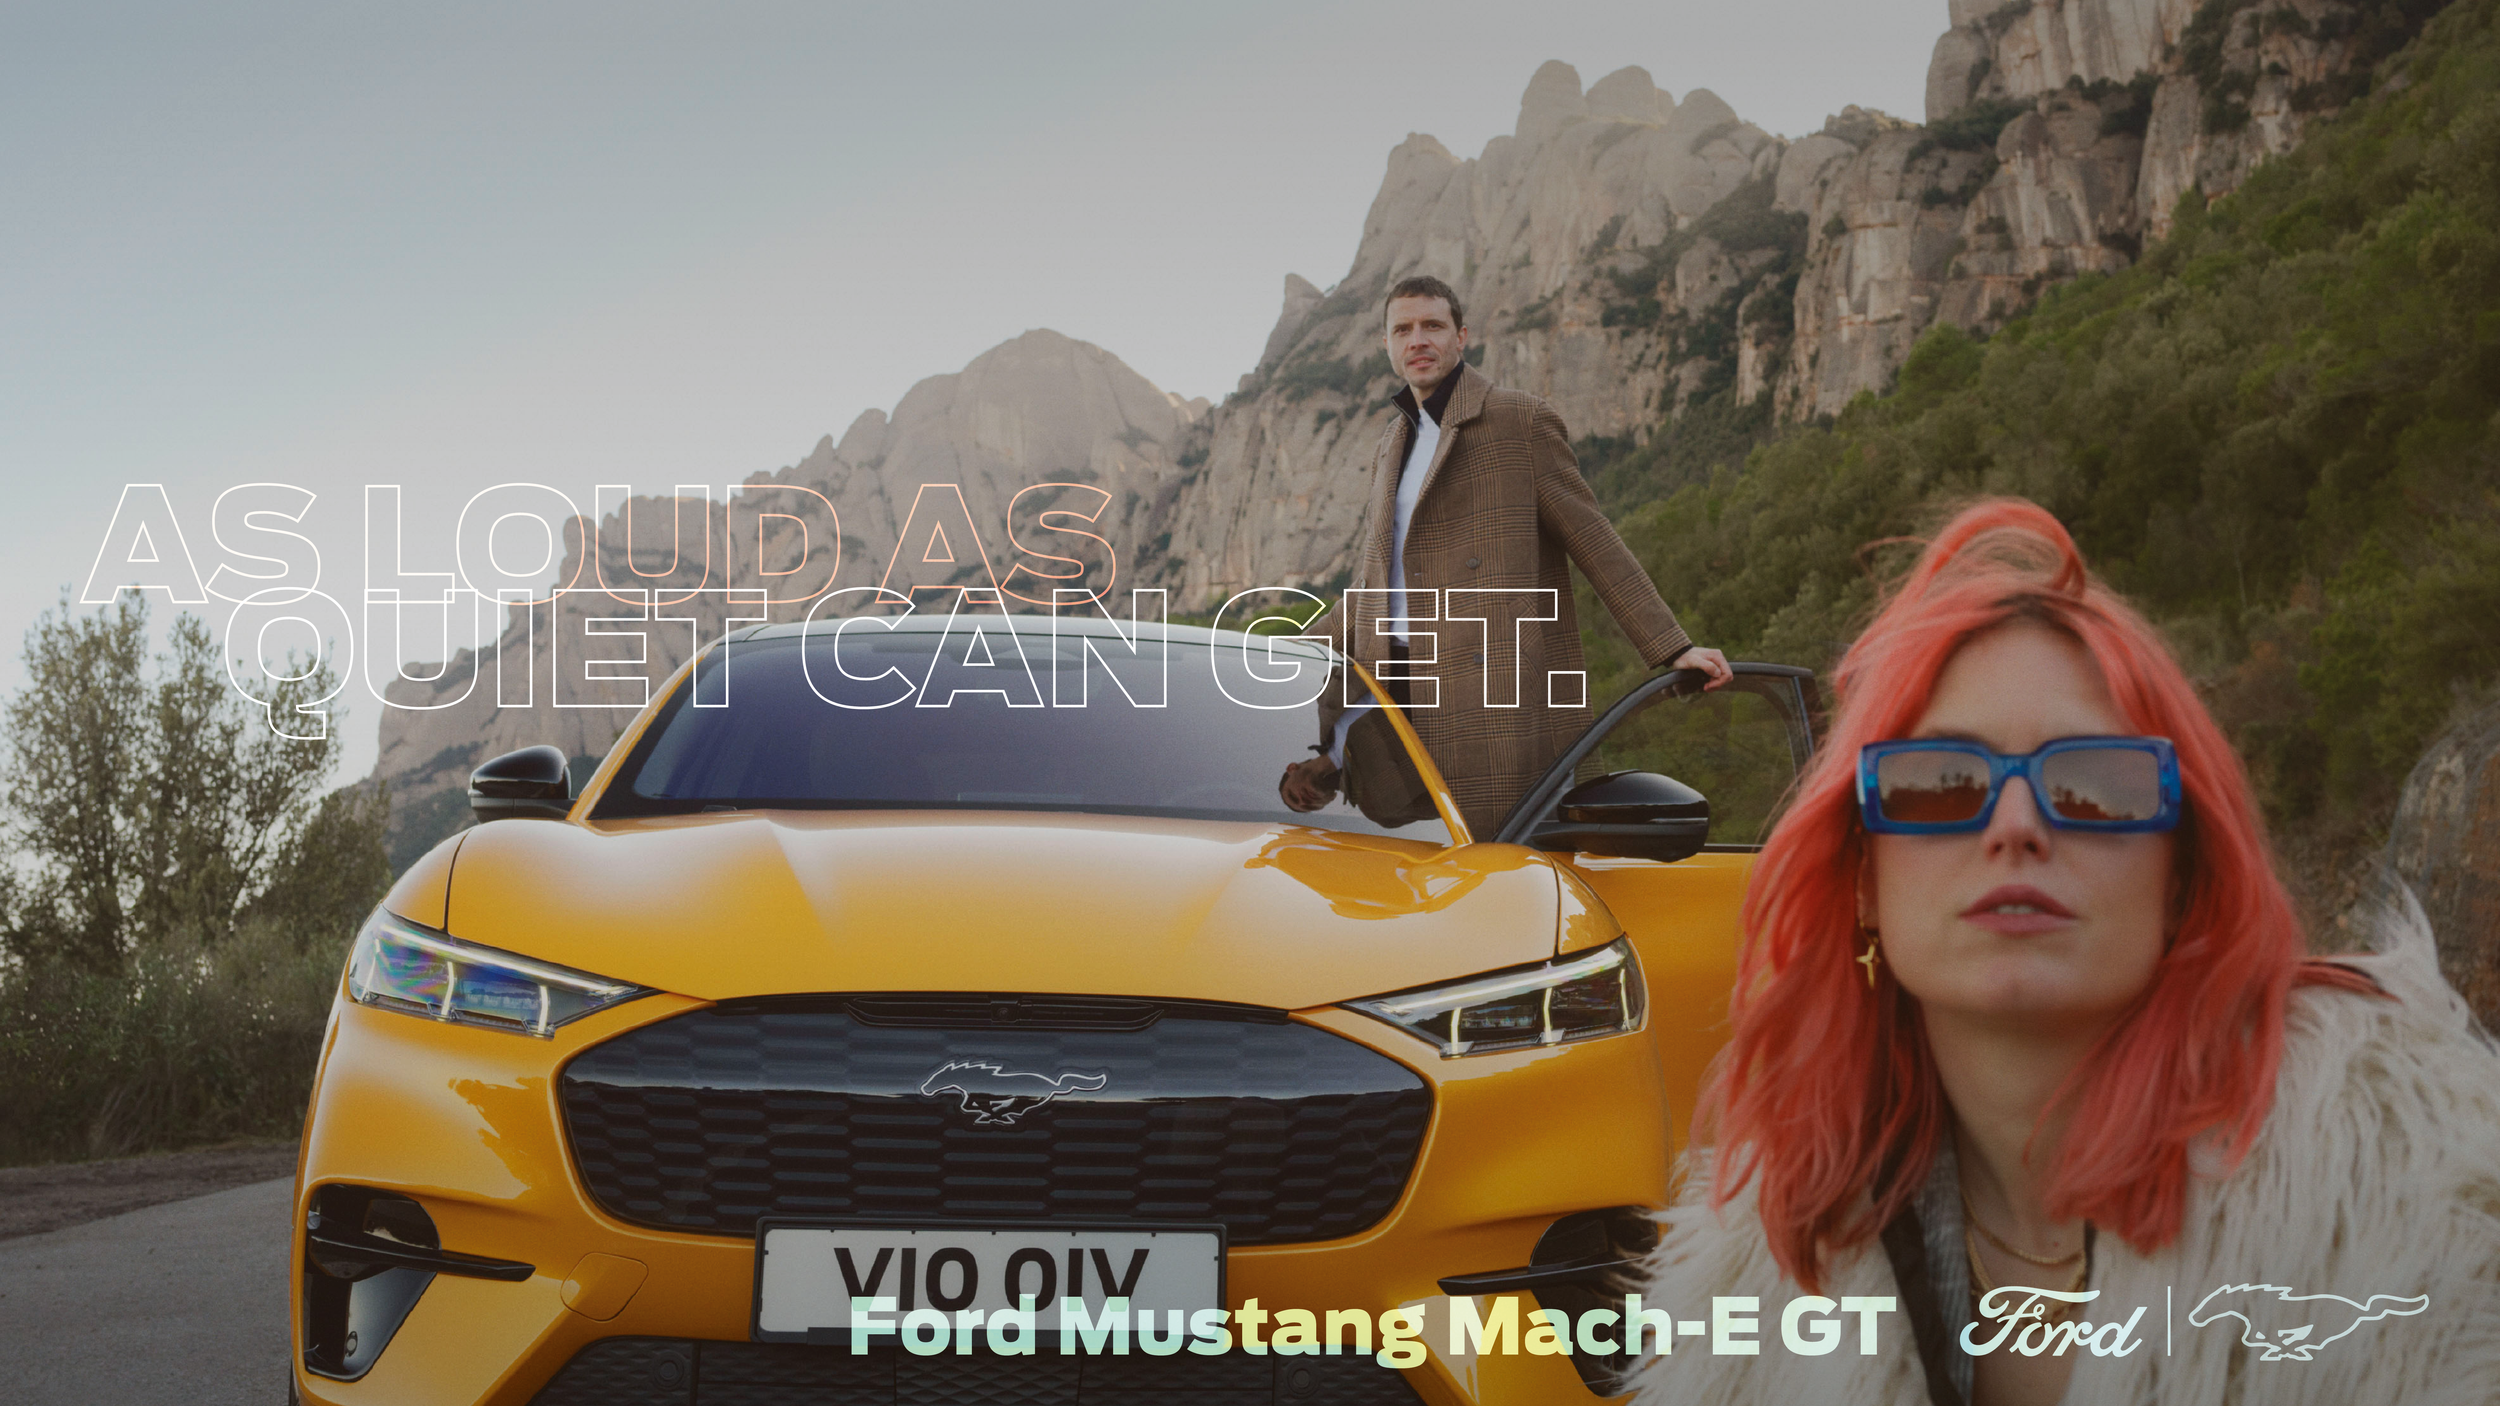 FORD-Mustang_Mach-e_GT_Erick-Barrios_Wolfgang-Warzilek3.png